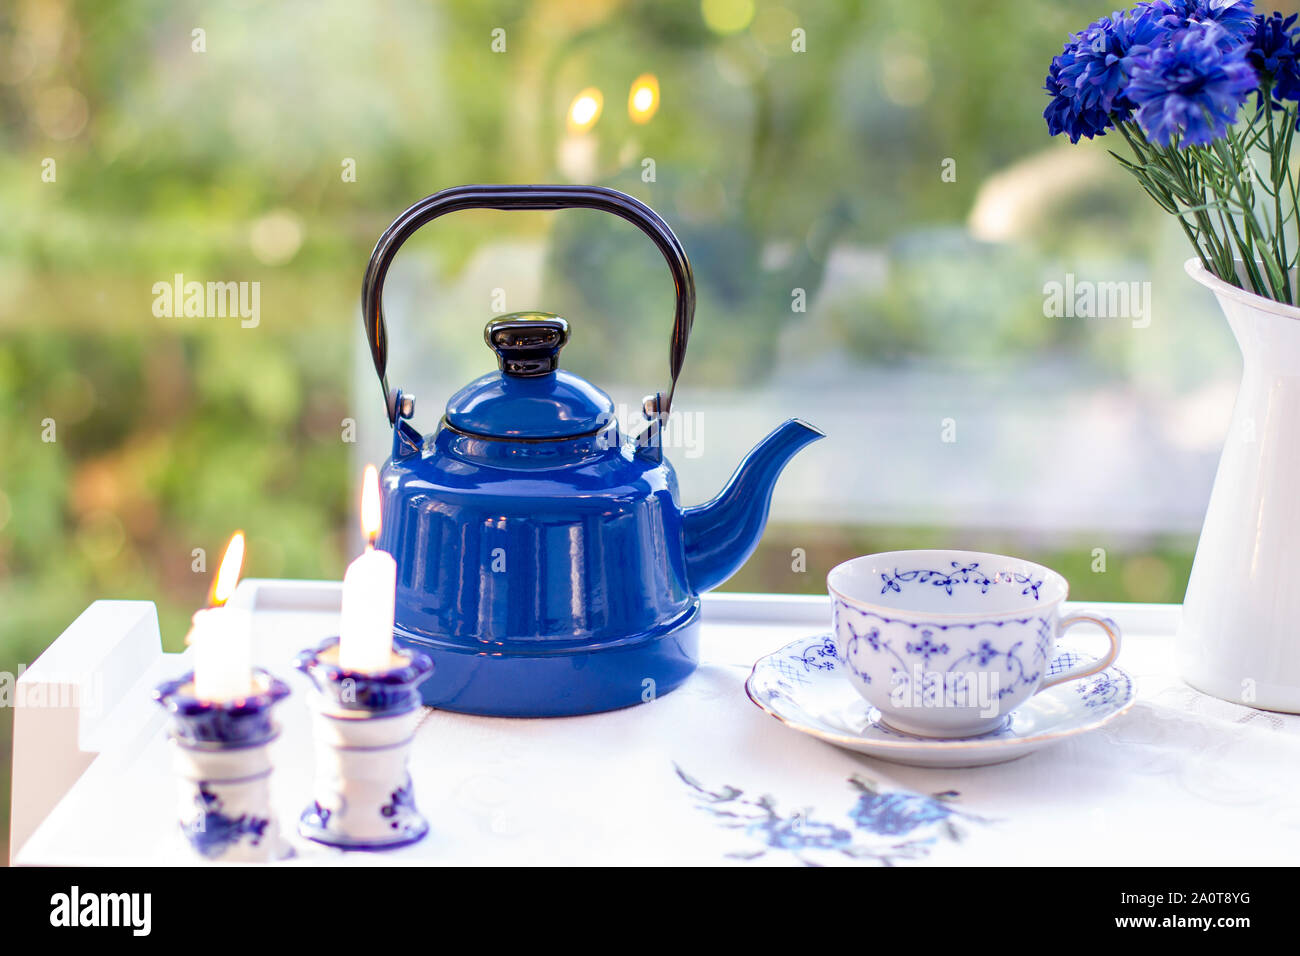 https://c8.alamy.com/compes/2a0t8yg/vintage-tetera-de-ceramica-azul-y-vaso-el-te-y-el-cafe-concepto-2a0t8yg.jpg